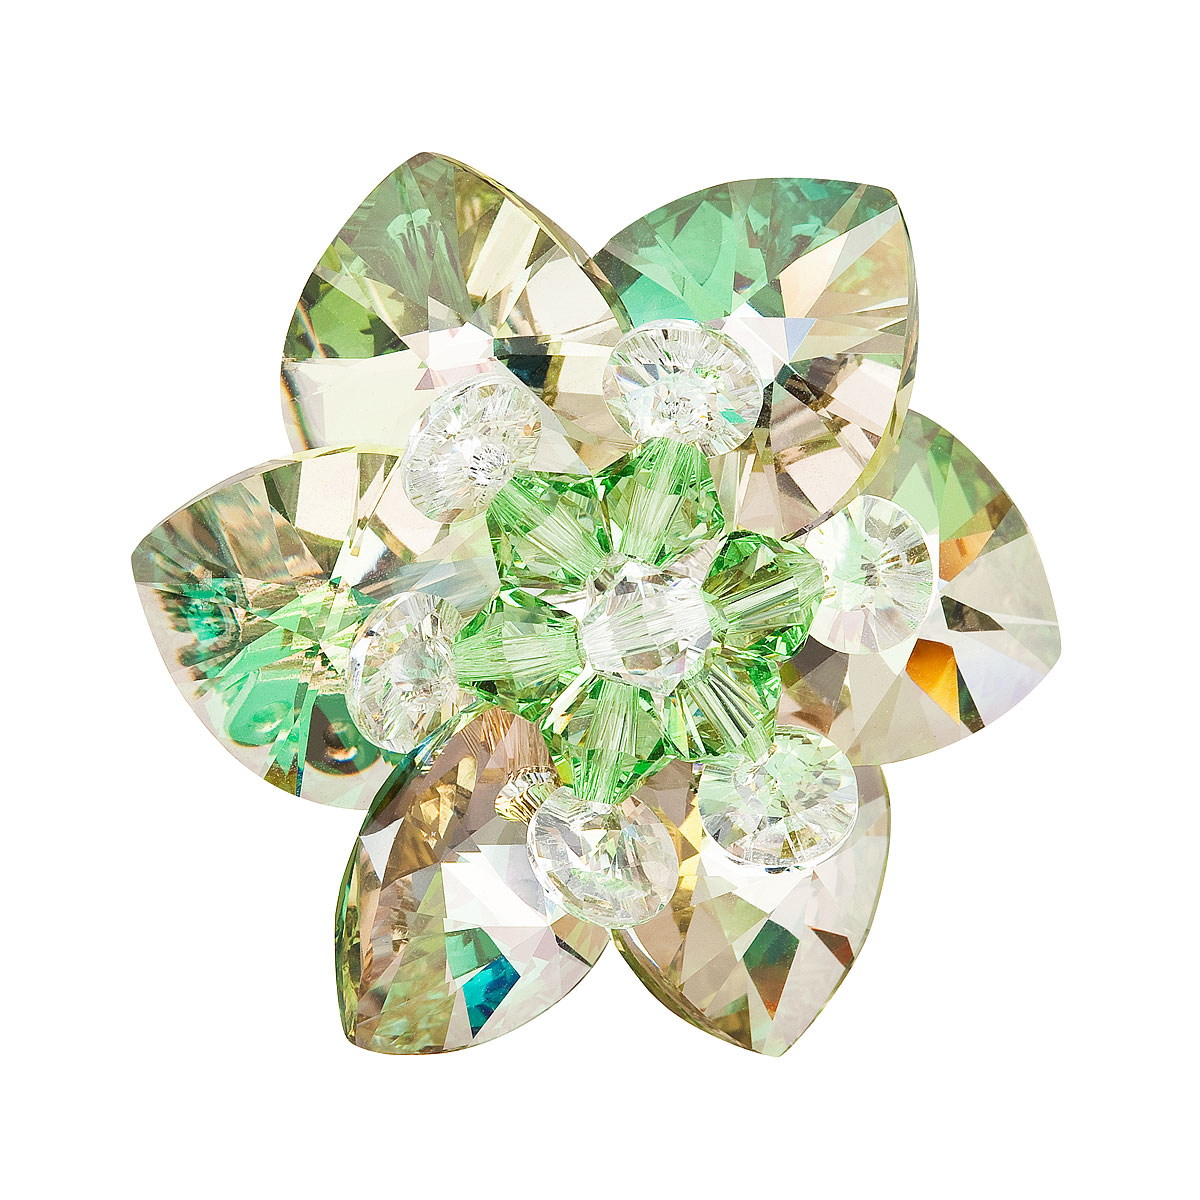 Brož bižuterie se Swarovski krystaly zelená kytička 78002.5